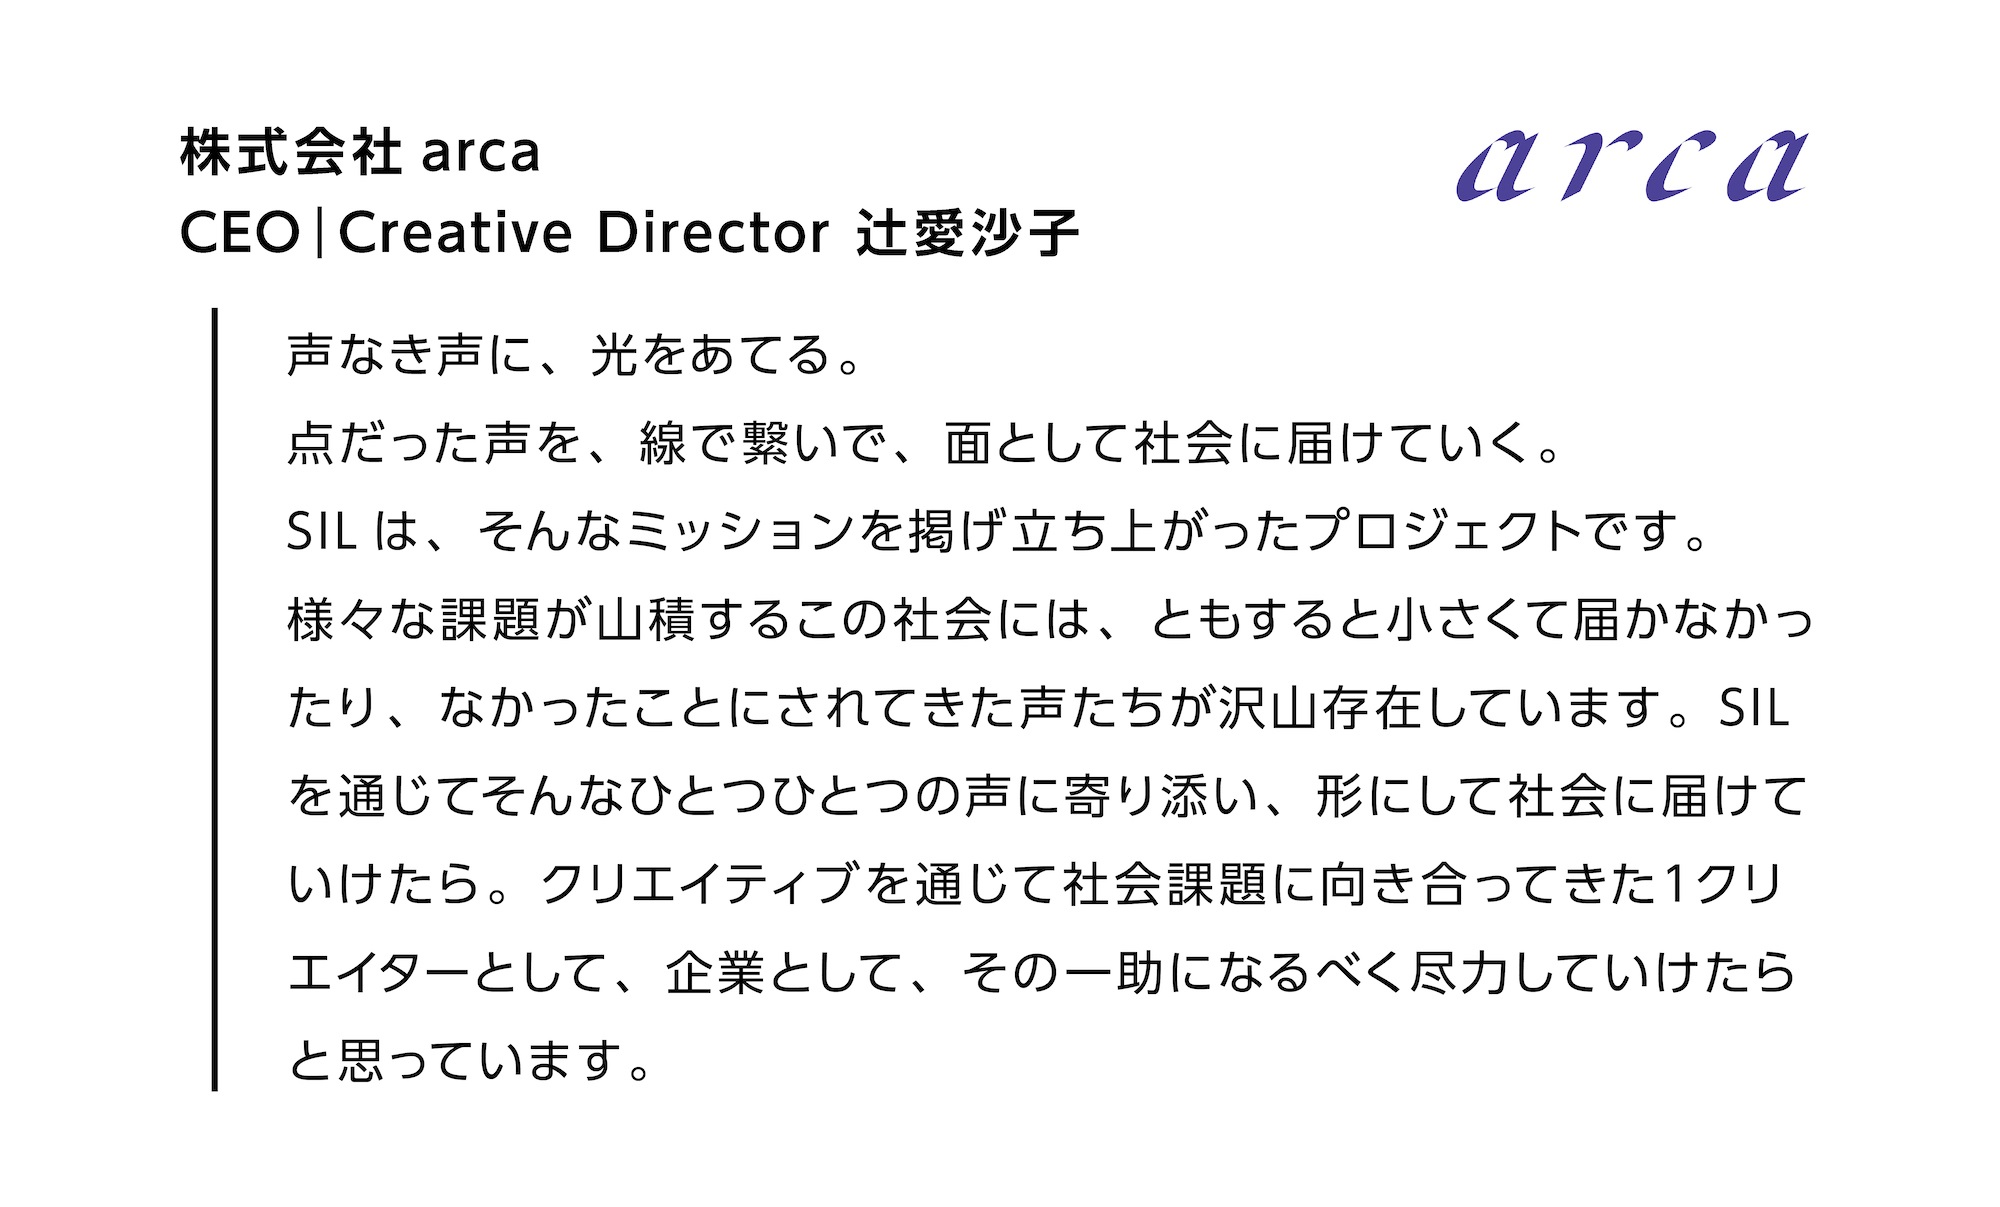 株式会社arca CEO|Creative Director 辻愛沙子の本プロジェクトに込めた想い